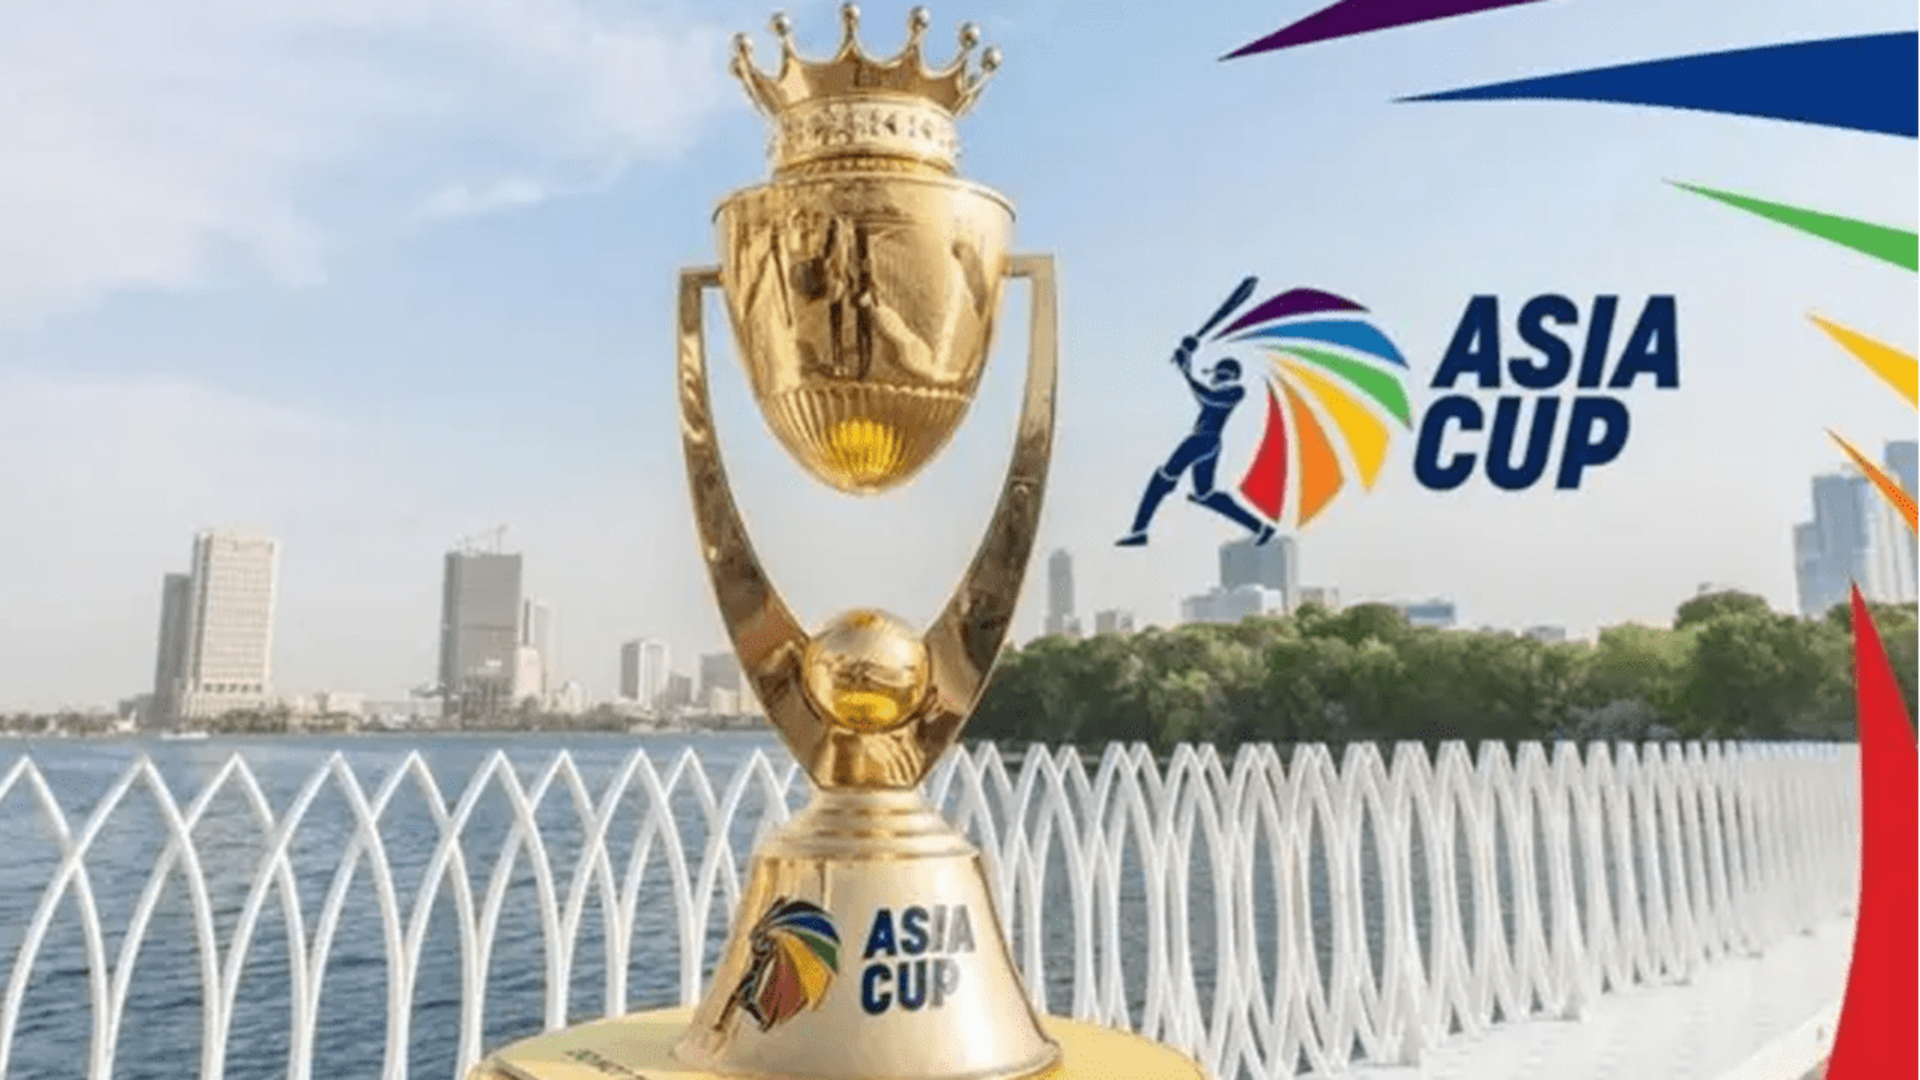 Asia Cup: ఈనెల 30 నుంచి ఆసియా కప్.. ఓటములలో పాకిస్థానే అగ్రస్థానం!